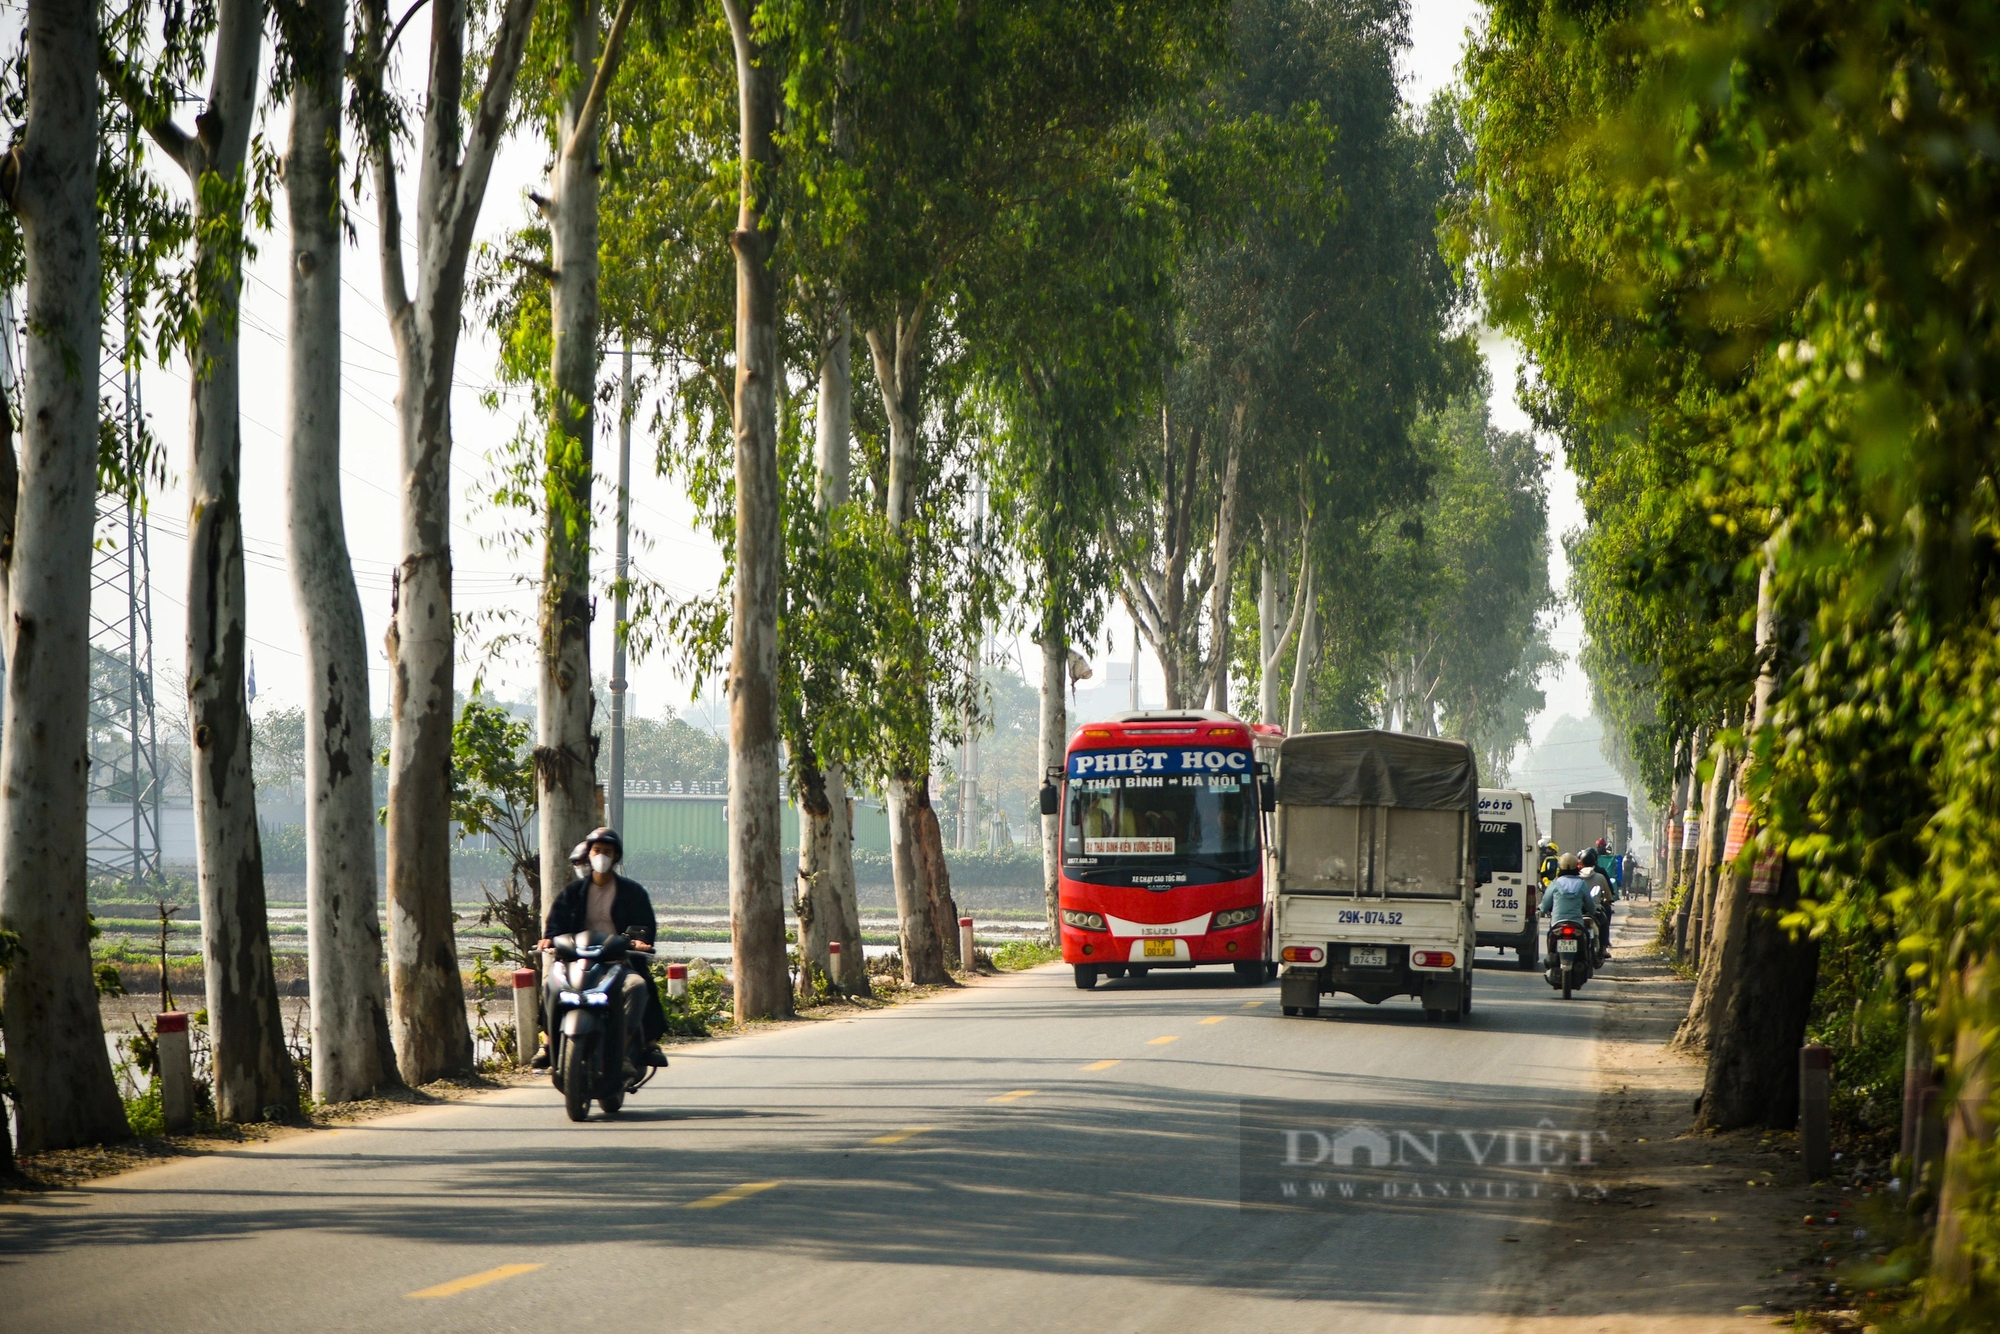 Cận cảnh tuyến đường ở Hà Nội sắp được chi 2.800 tỷ đồng để mở rộng- Ảnh 5.